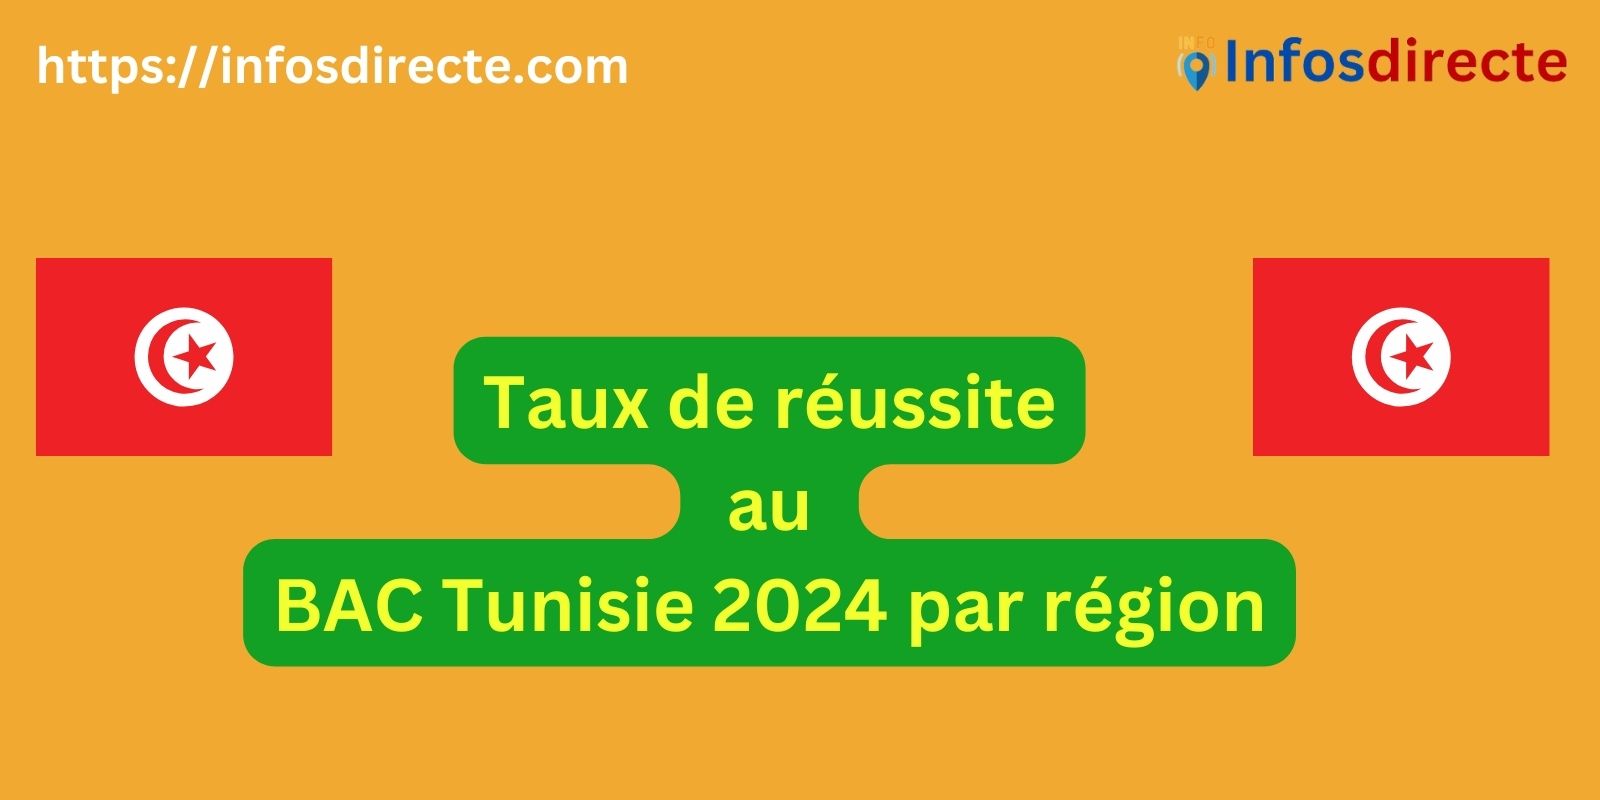 Taux de réussite au BAC Tunisie 2024 par région